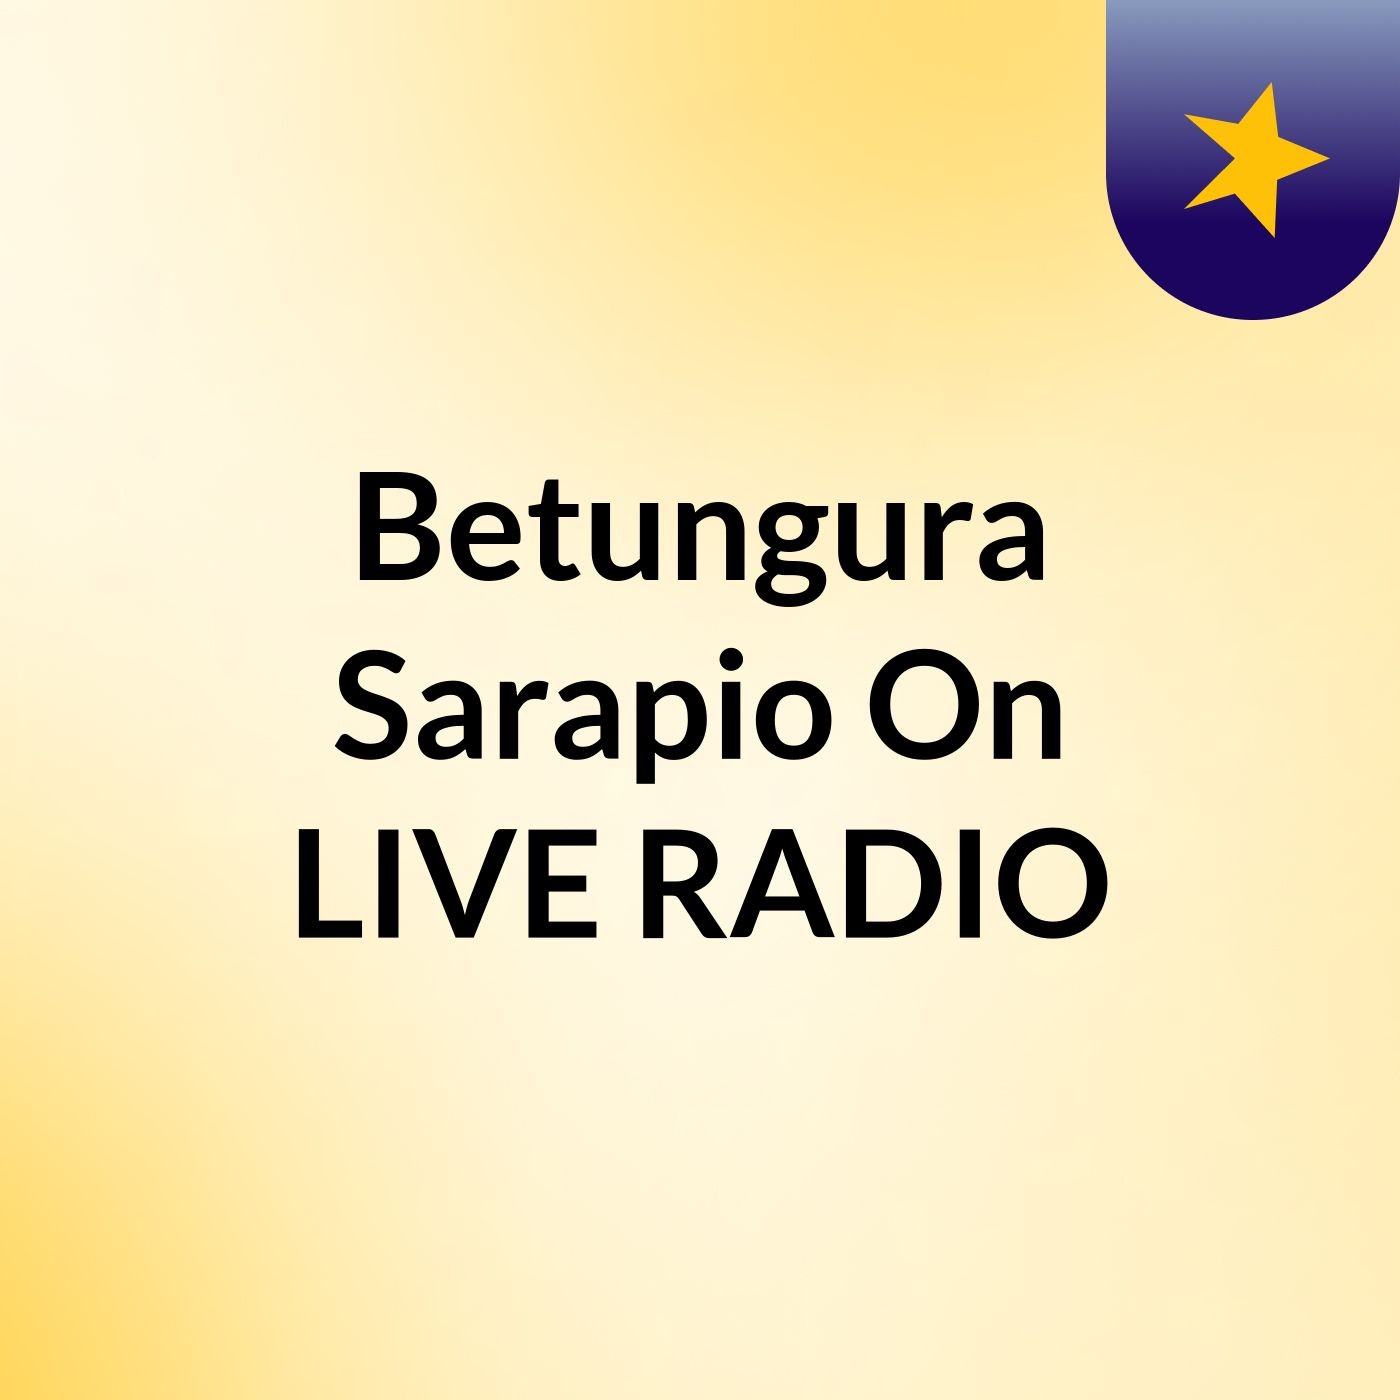 Betungura Sarapio On LIVE RADIO